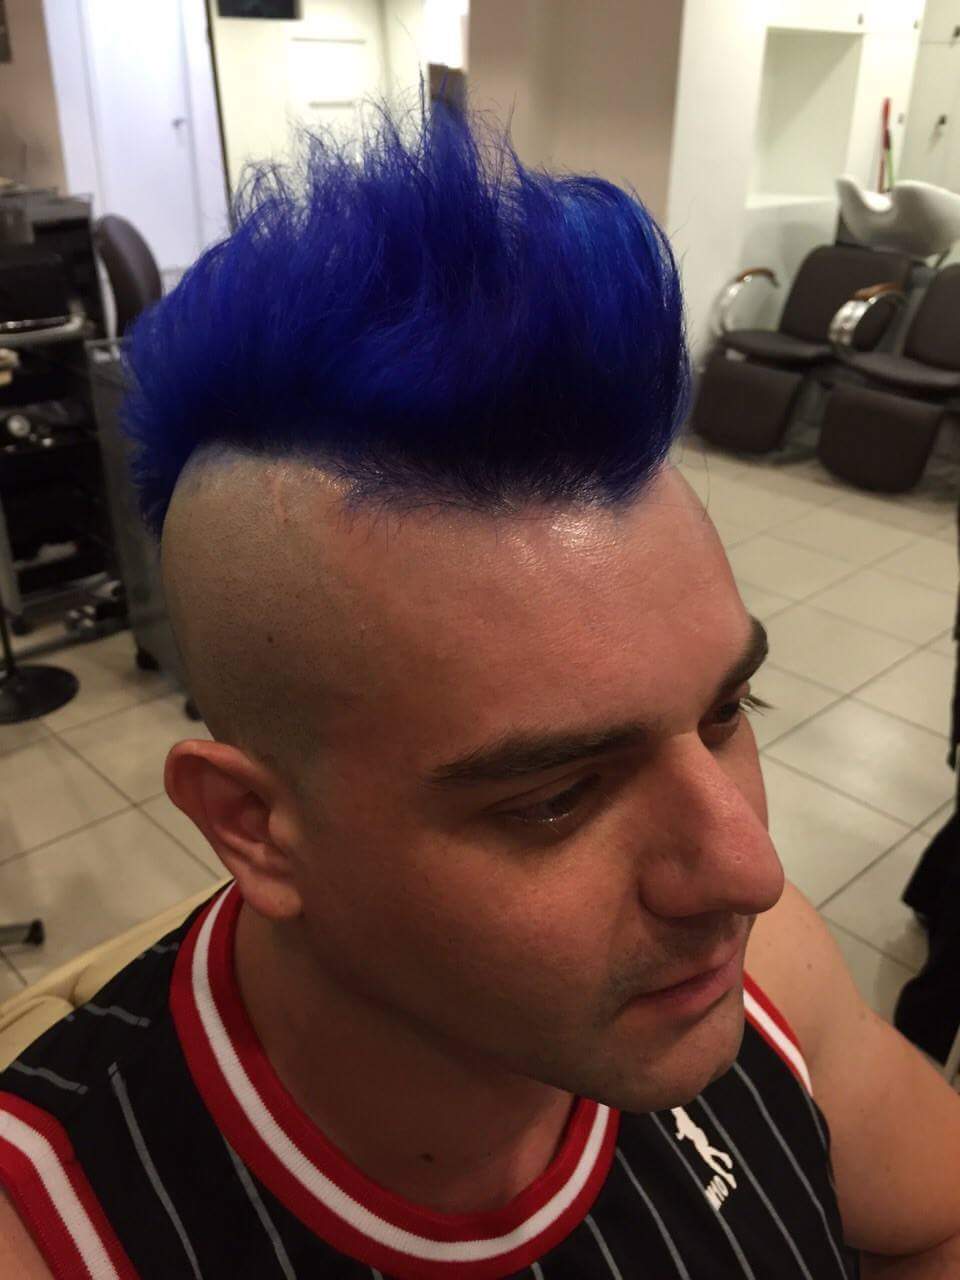 Moicano, na navalha, 
Descoloração e tonalização entre roxo e azul! cabelo cabeleireiro(a) barbeiro(a)